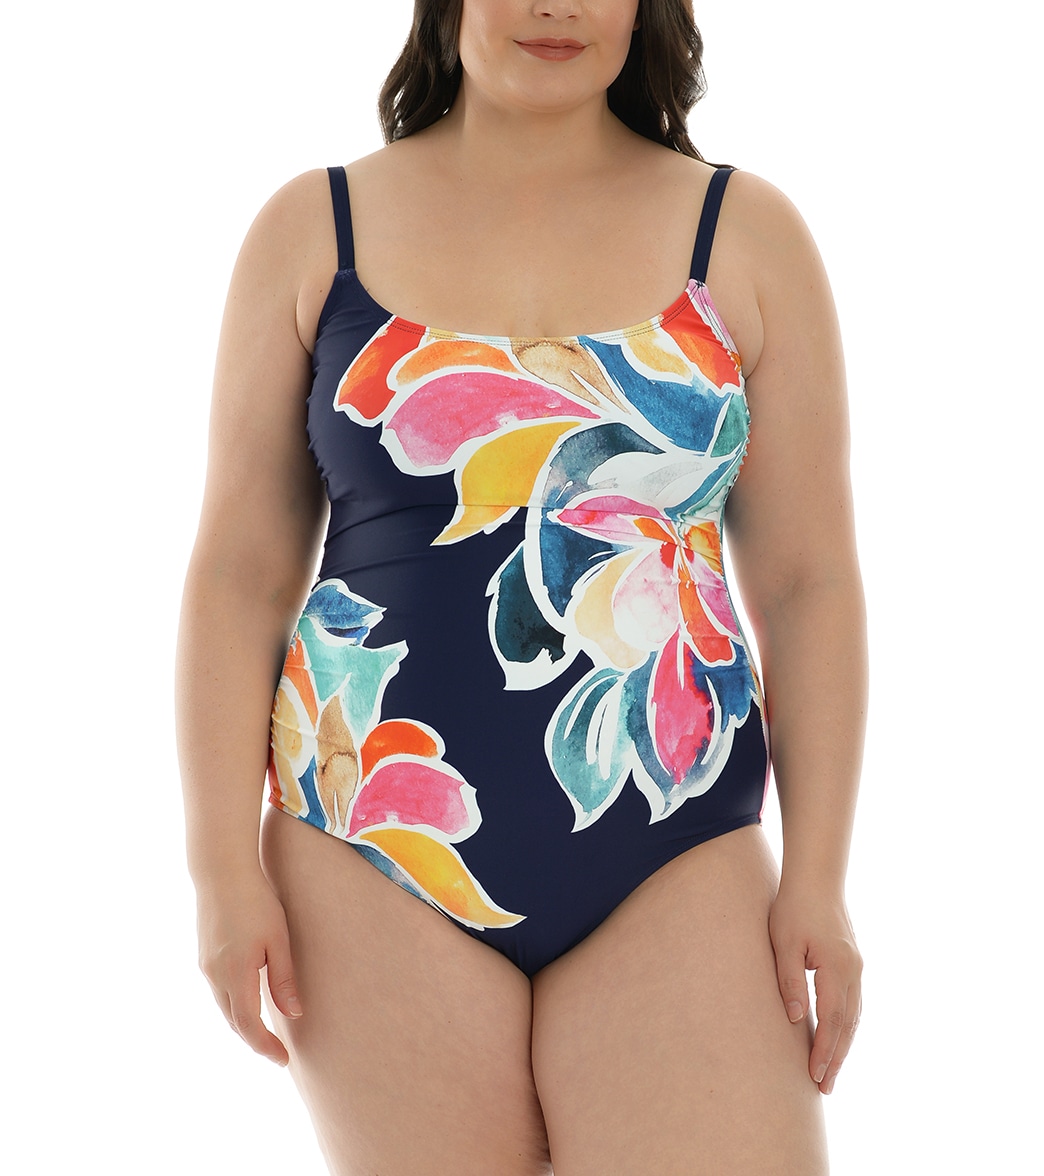 La Blanca Women's Plus Size Petals In Bloom Lingerie Mio One Piece Swimsuit - Indigo 18W - Swimoutlet.com